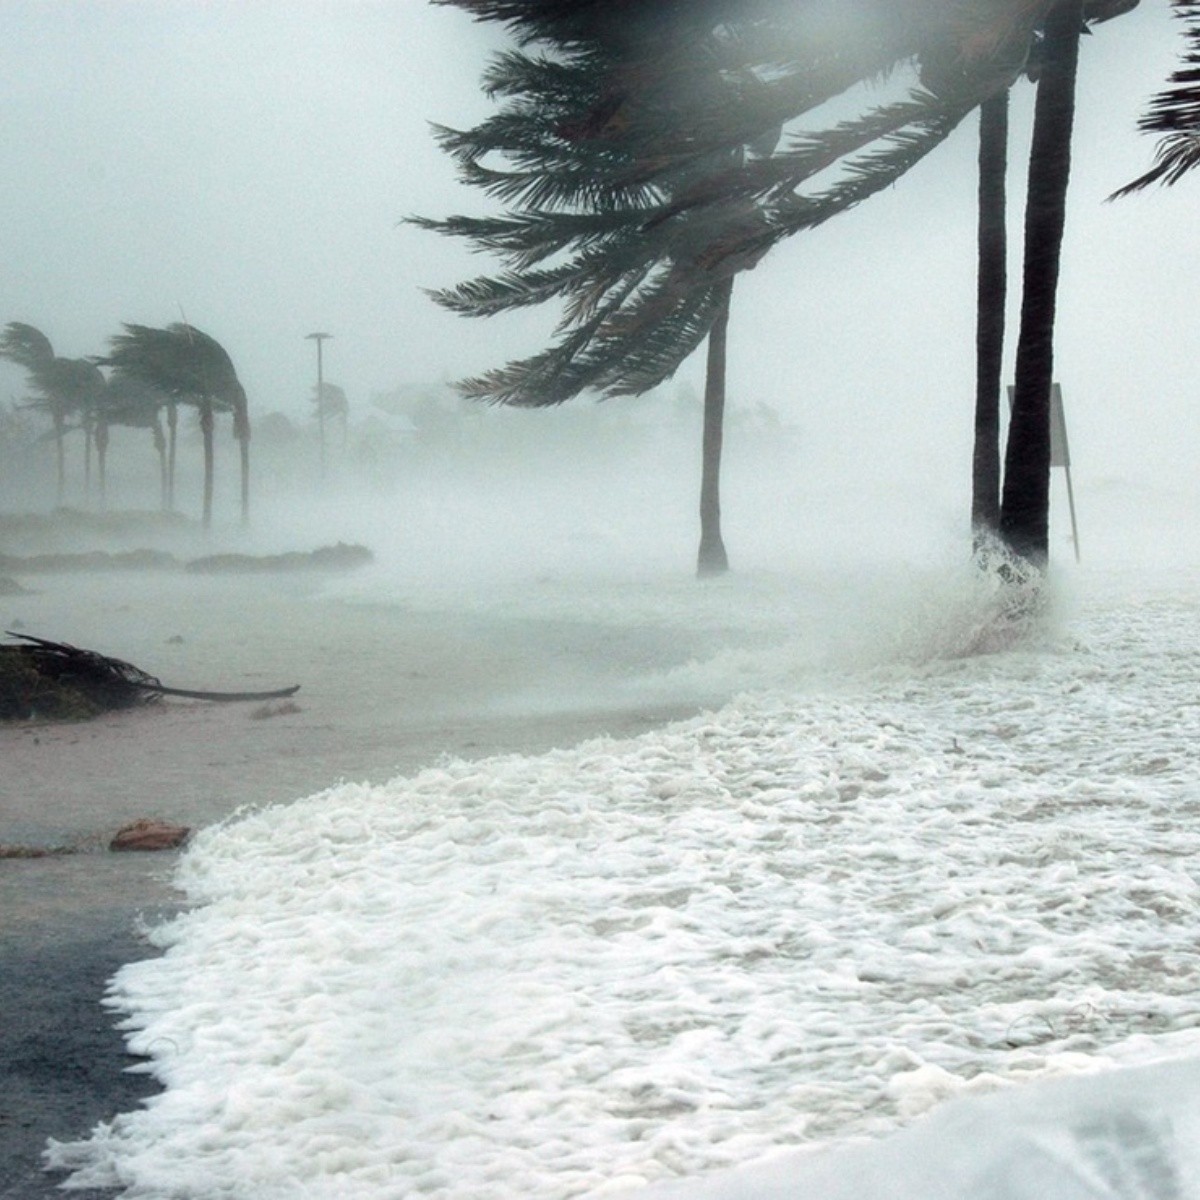 huracán alberto y aletta amenazan méxico: fechas y estados impactados revelados por expertos